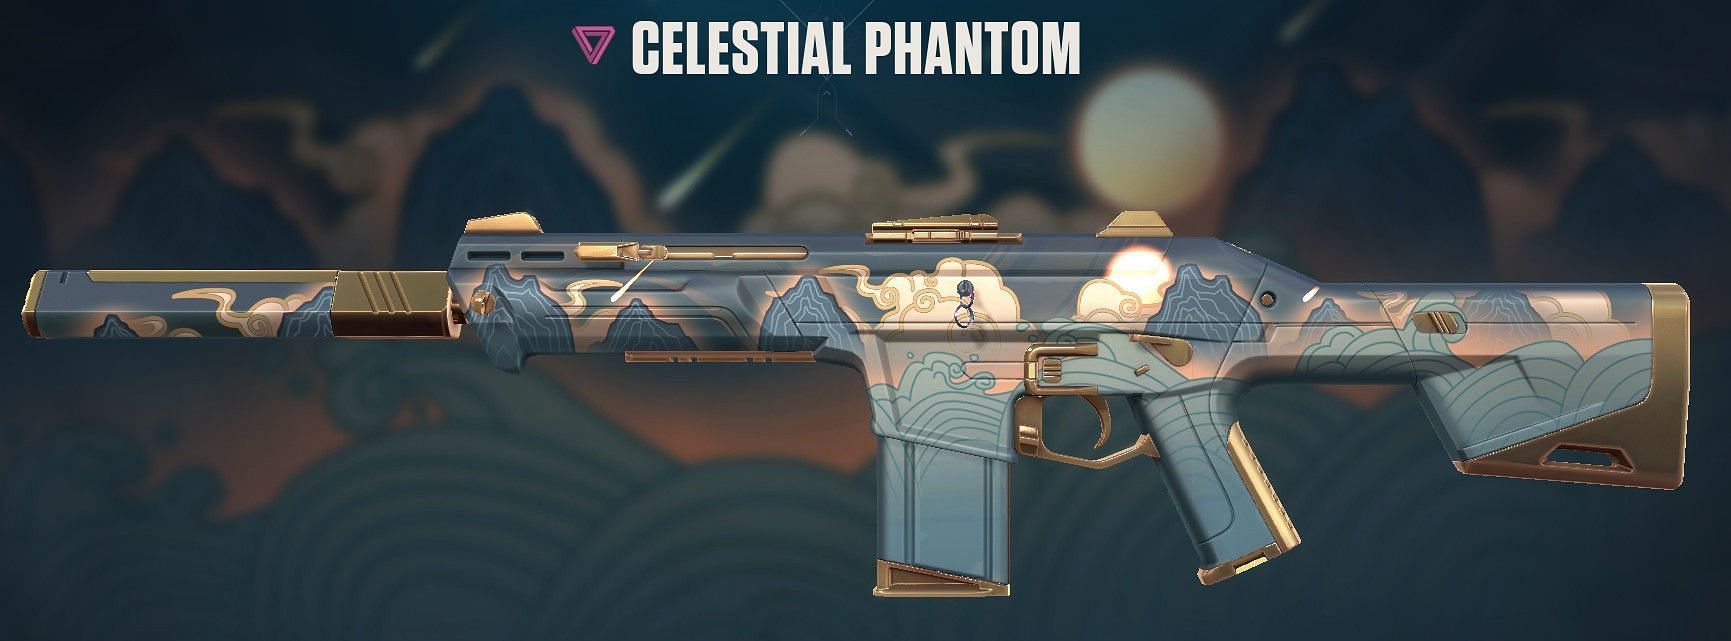 Celestial Phantom (Image via Riot Games)